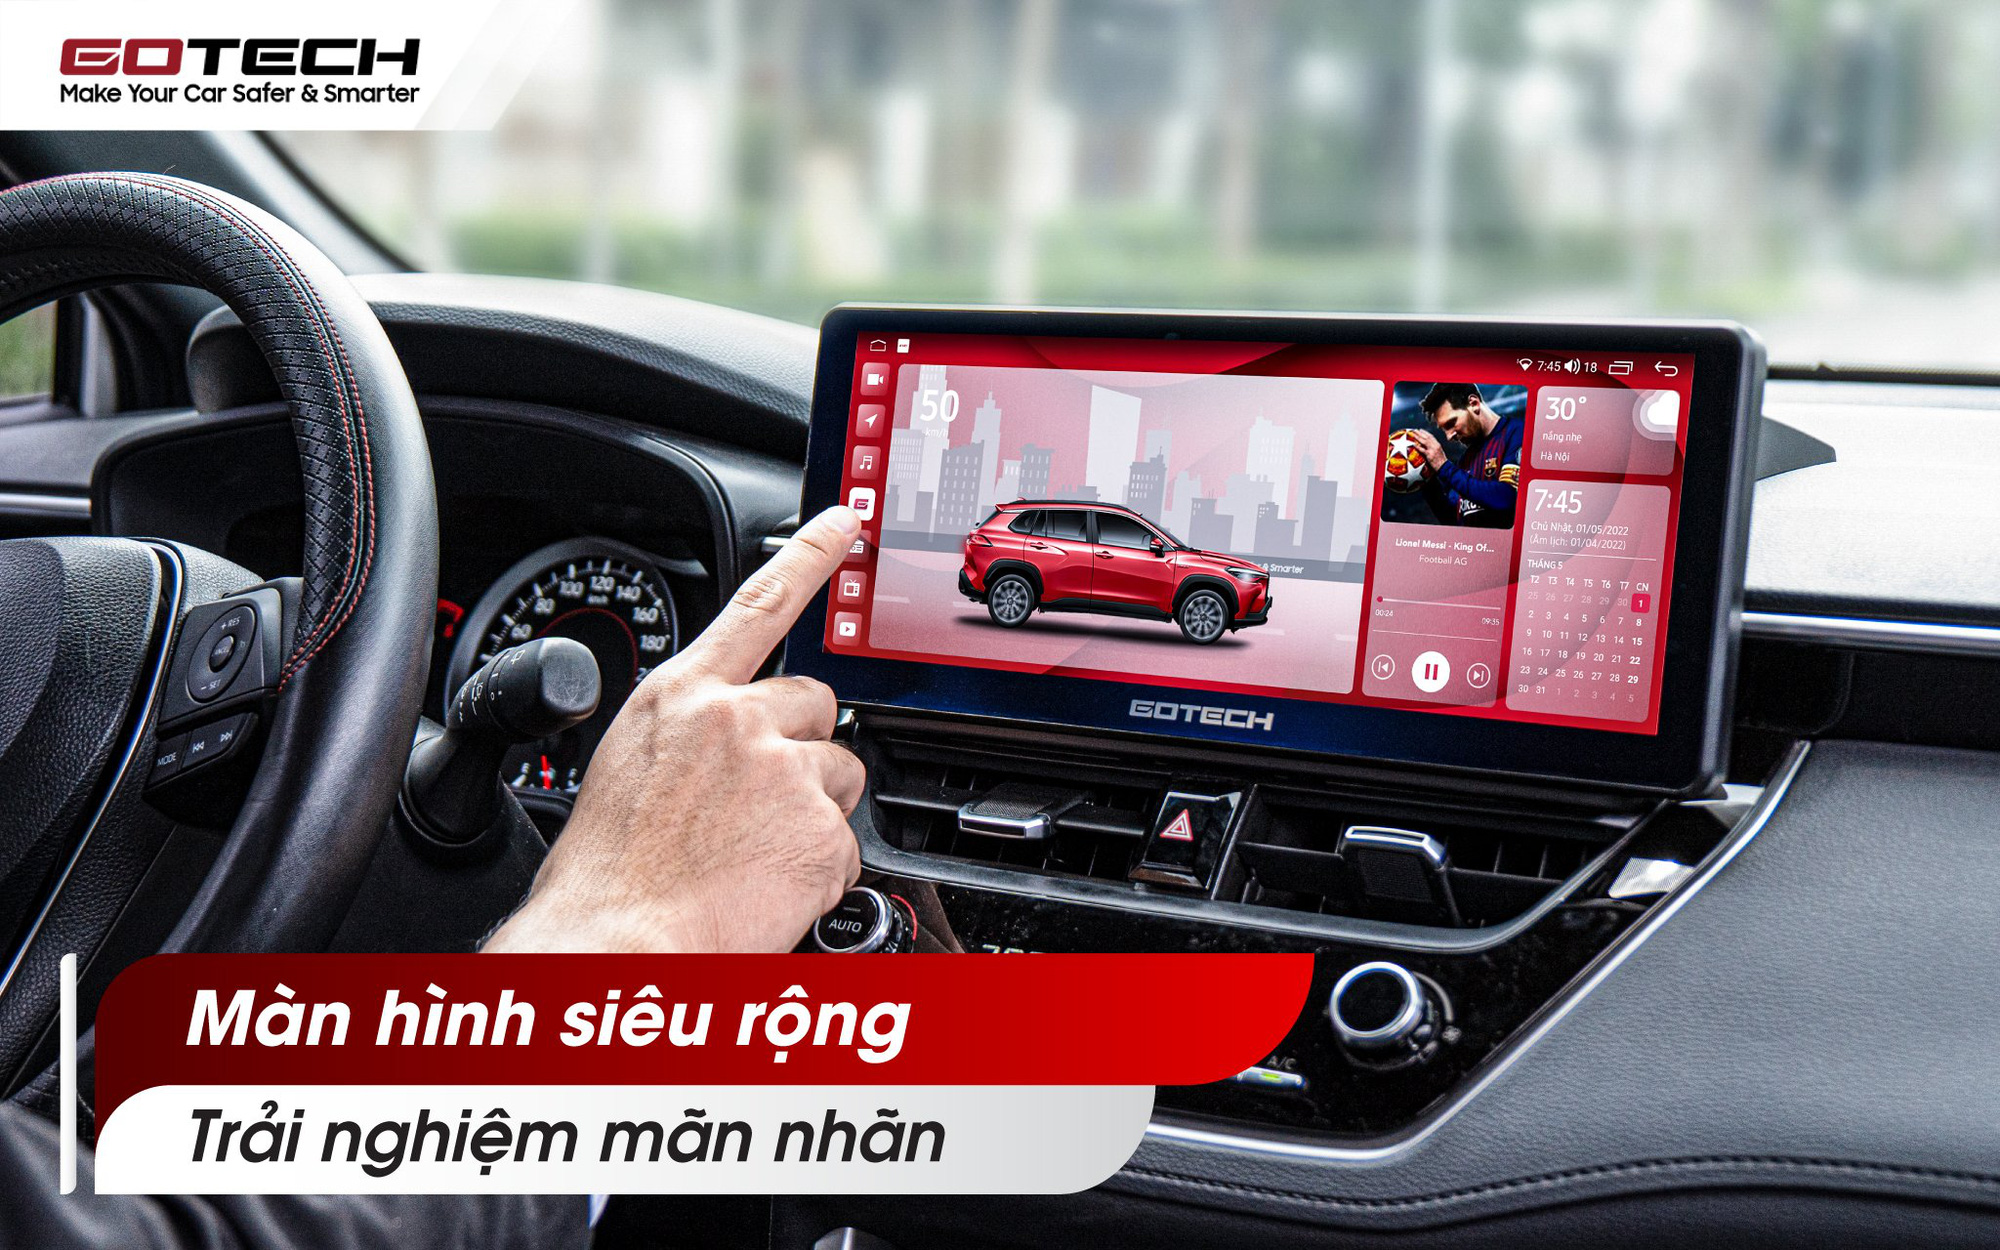 GOTECH tiên phong ra mắt màn hình ô tô thông minh với công nghệ Blue Cut giúp bảo vệ mắt - Ảnh 2.